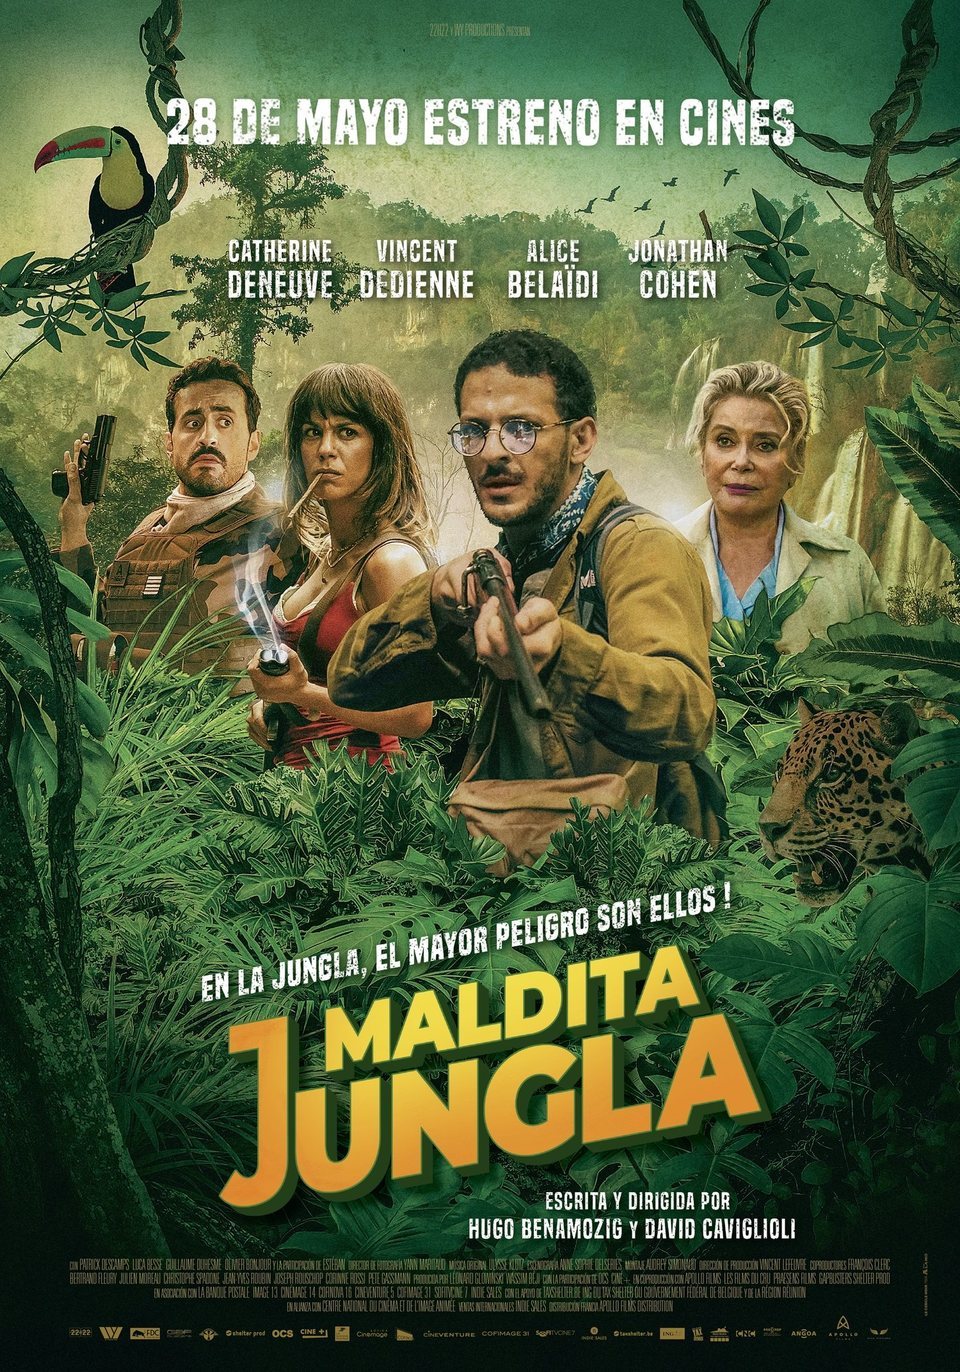 Poster of Terrible Jungle - España